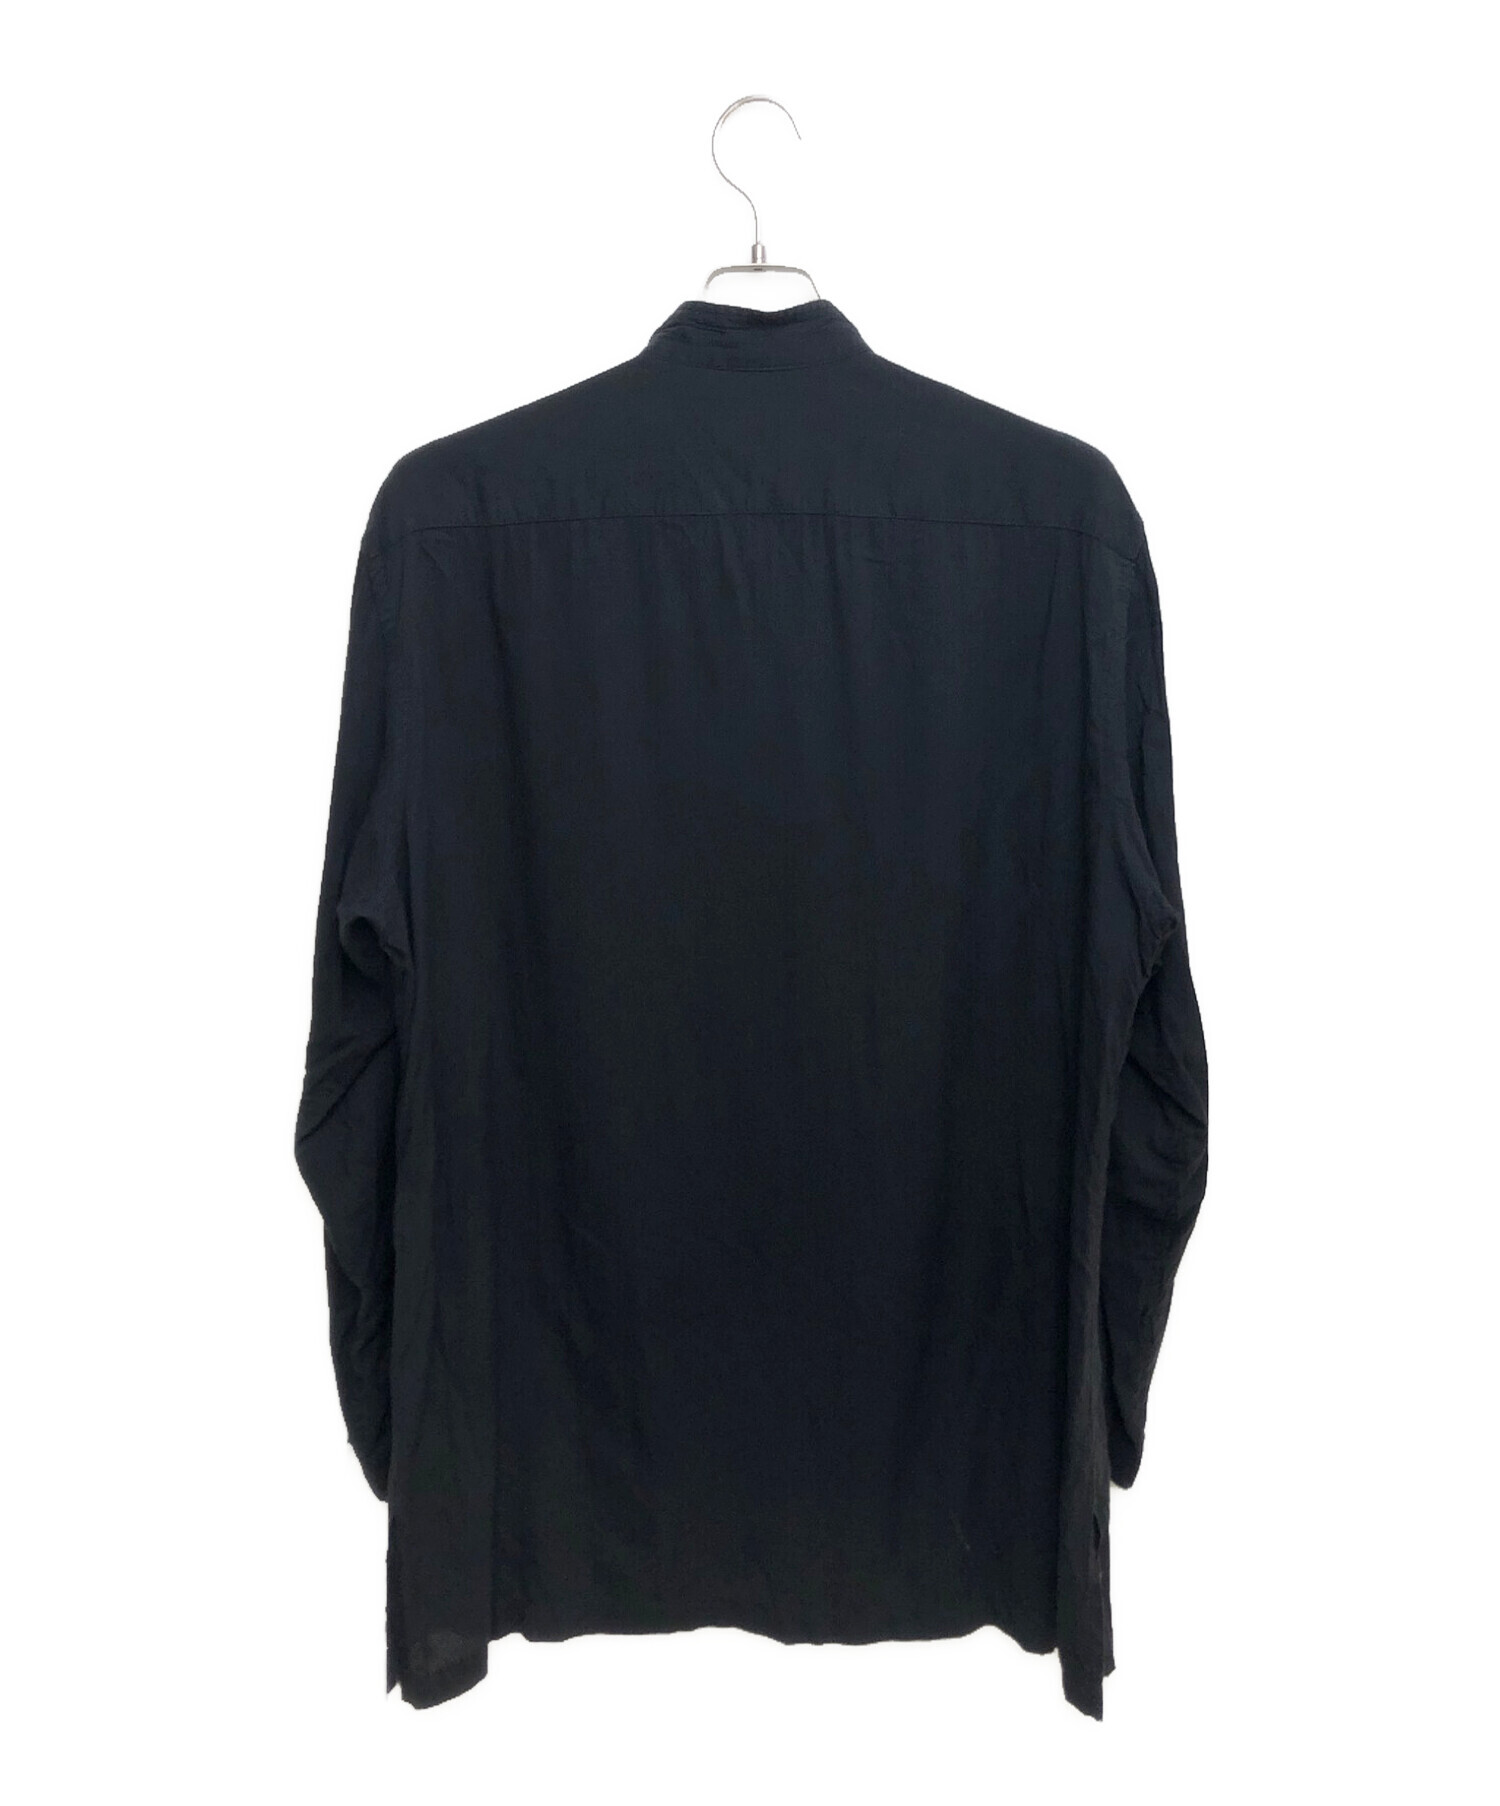 Yohji Yamamoto pour homme (ヨウジヤマモトプールオム) スタンドカラーシャツジャケット ブラック サイズ:3